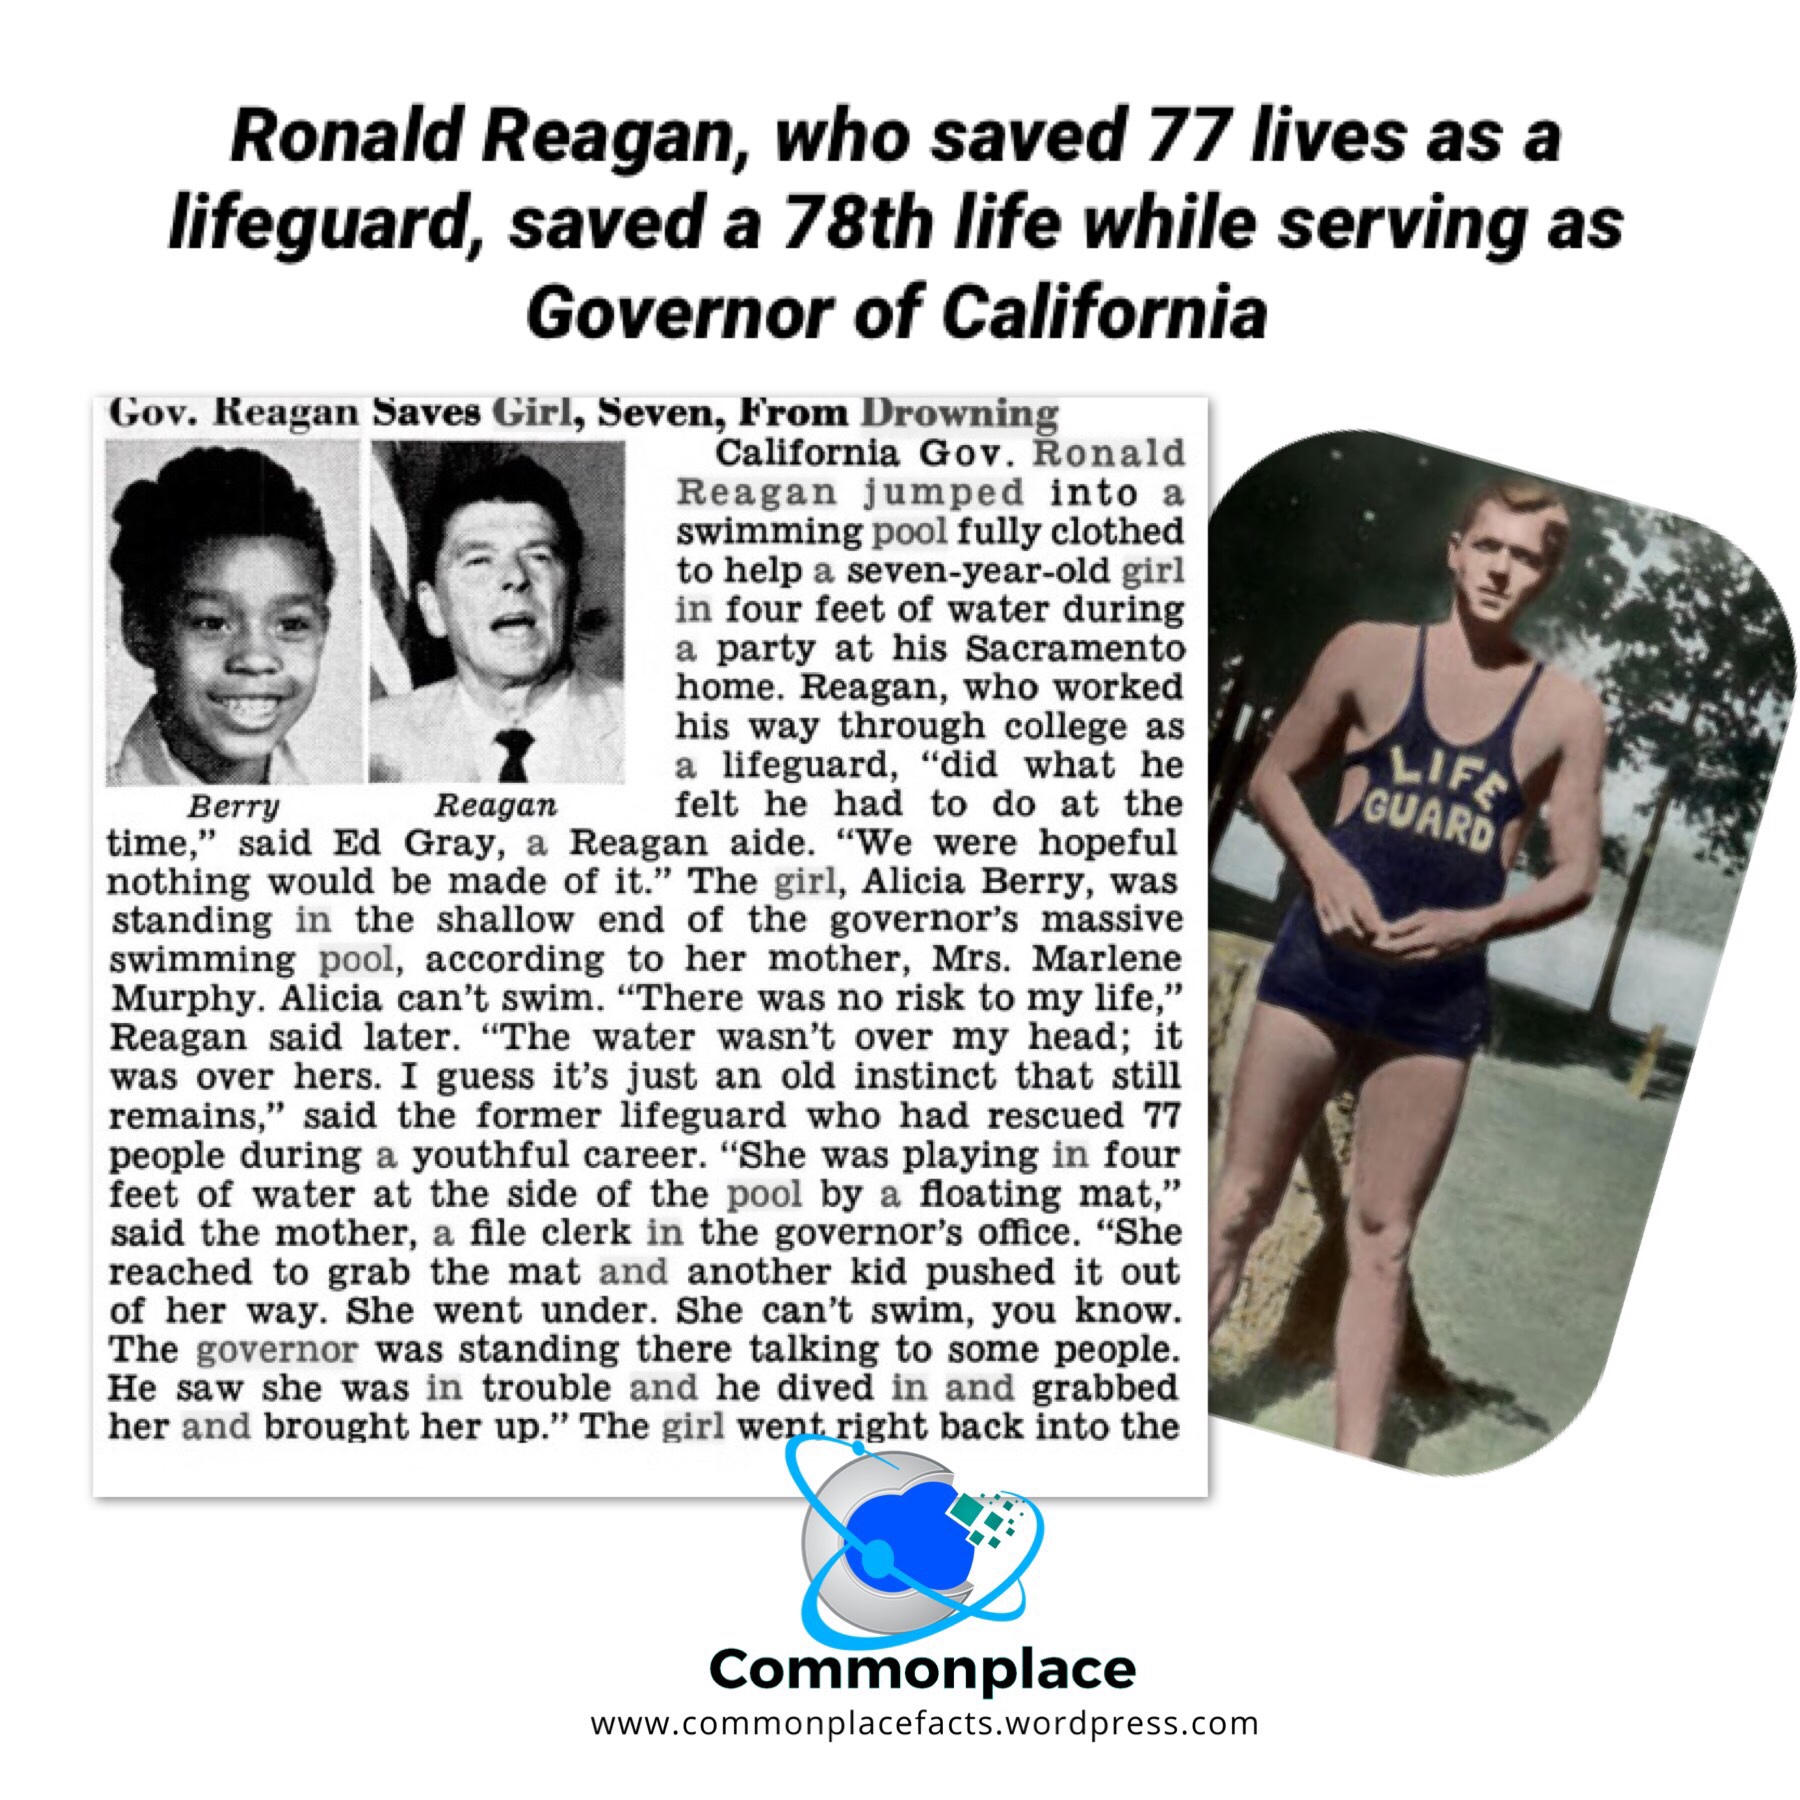 #Reagan #RonaldReagan #lifeguard #Governor